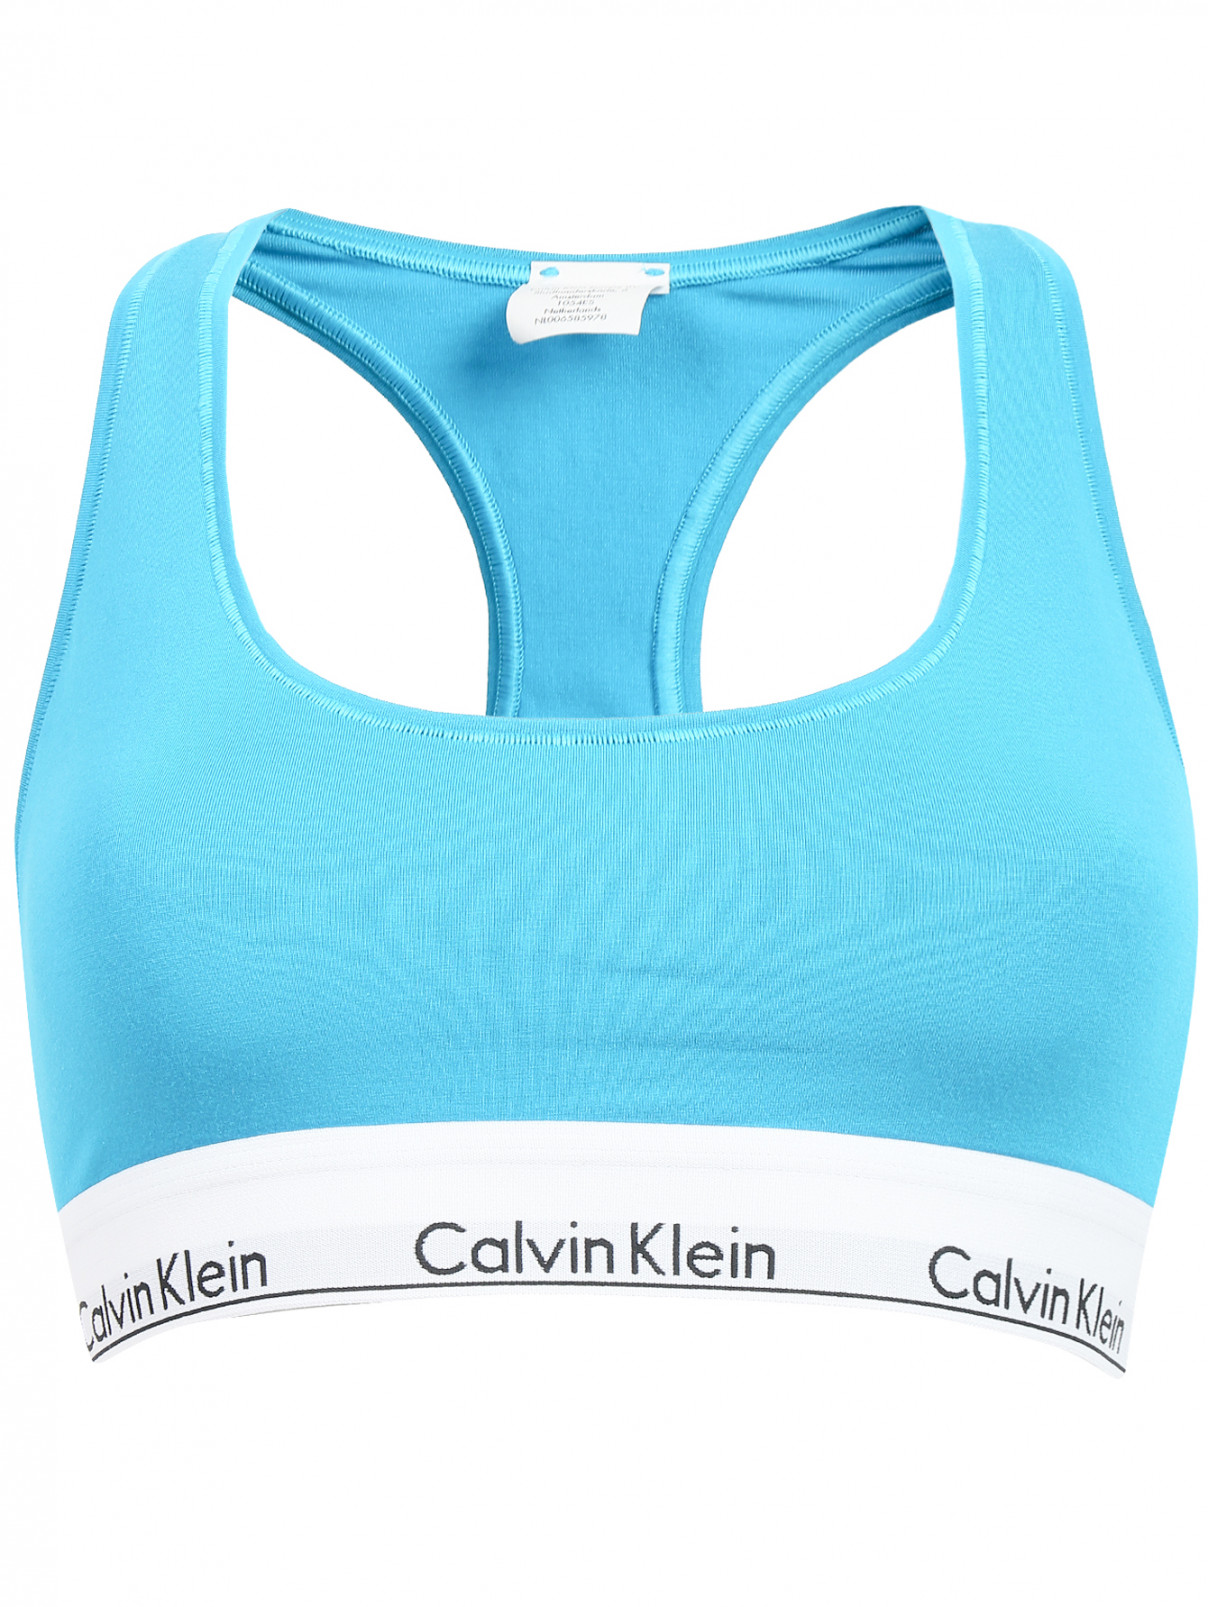 Кроп-топ с контрастной отделкой Calvin Klein  –  Общий вид  – Цвет:  Синий